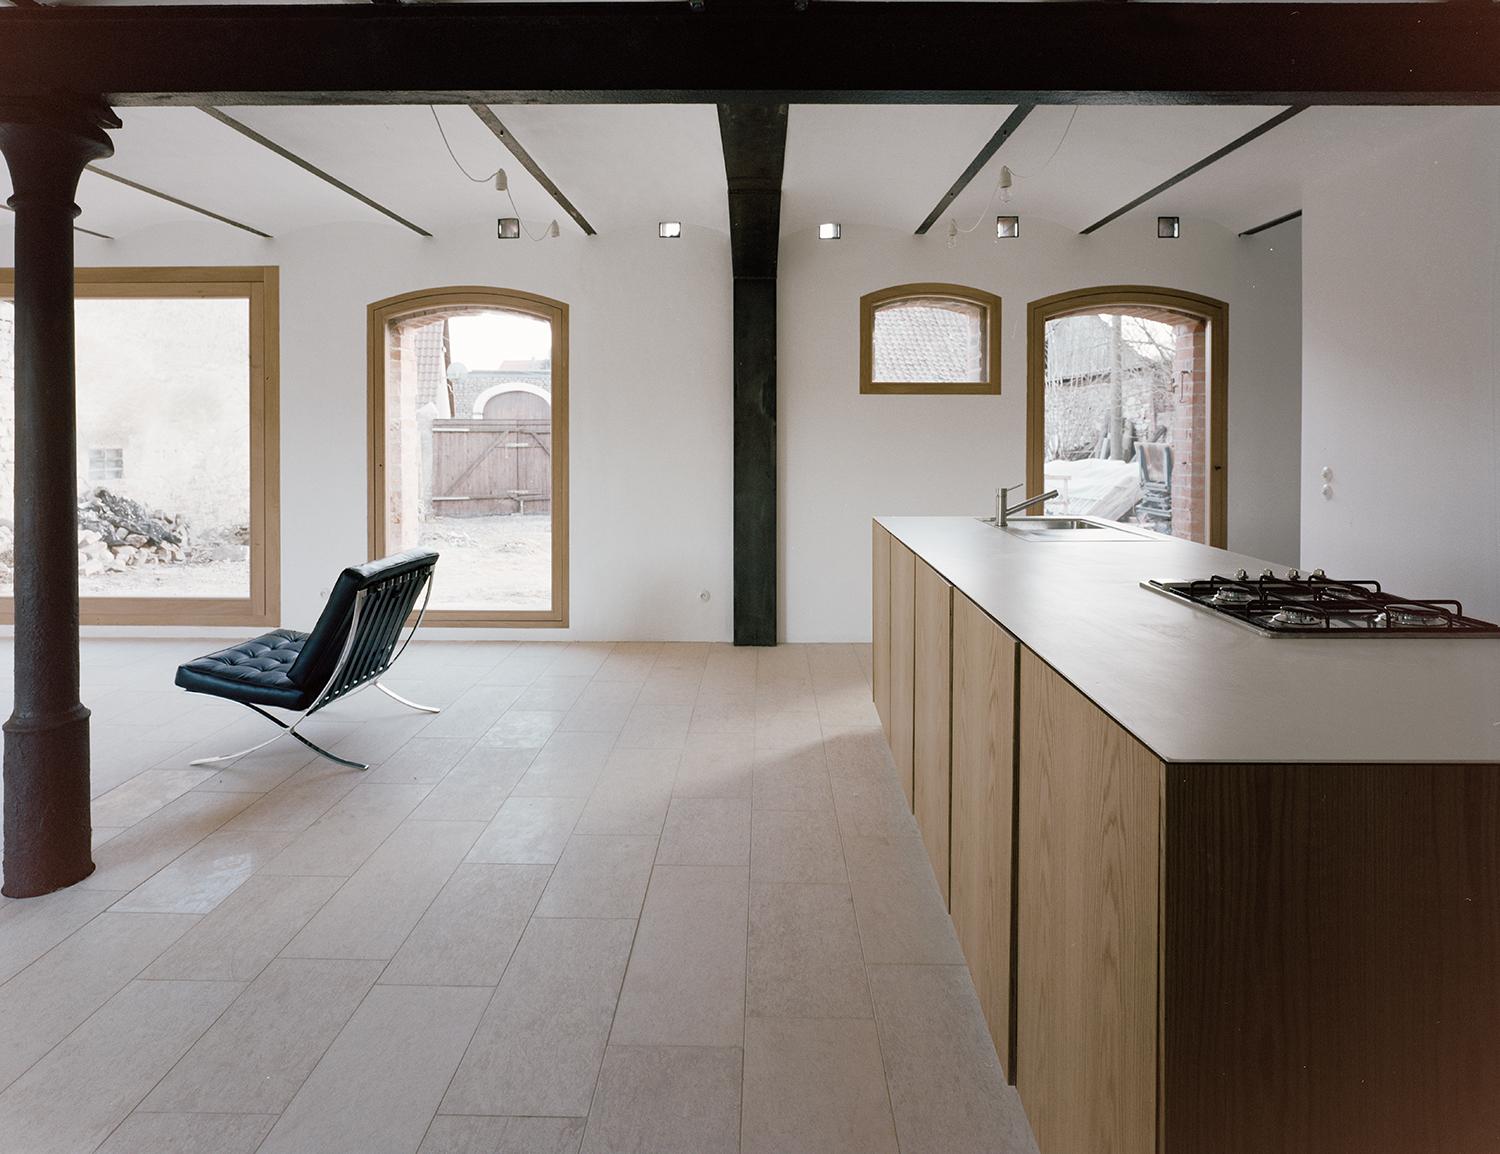 Haus Stein #küche #architektenhaus #offeneküche #lehmputz #naturmaterial #großesfenster ©Simon Menges